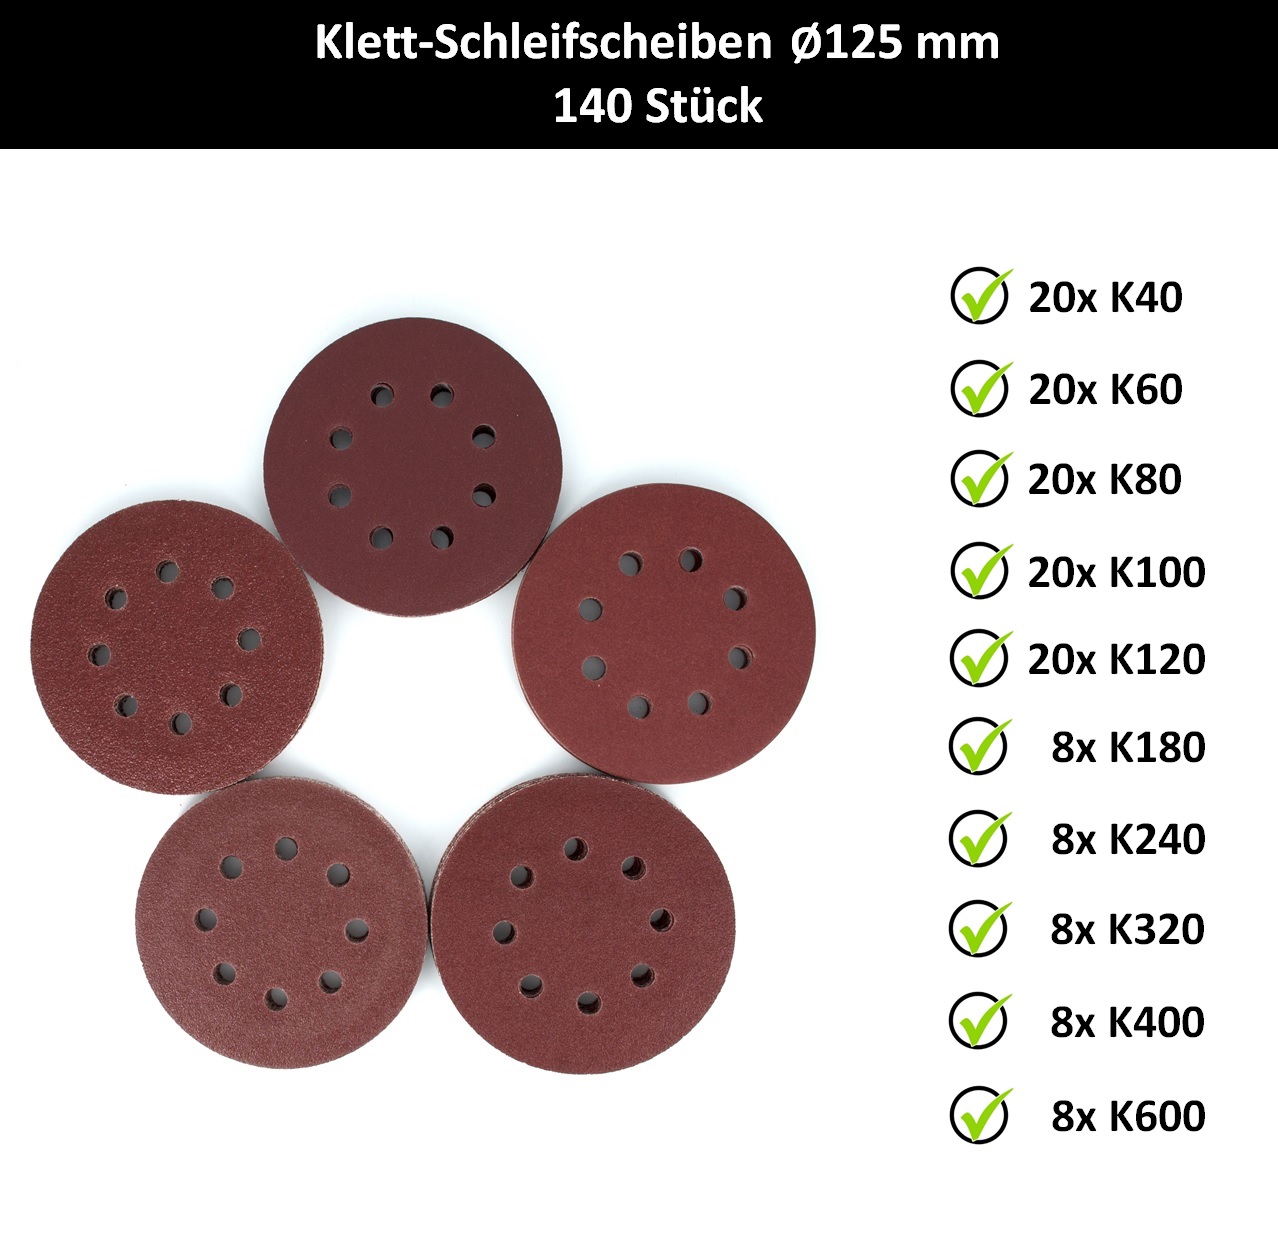 Klett Schleifscheiben für PARKSIDE PEXS 270 C3 Exzenter Schleifer 125 mm  8-Loch | eBay